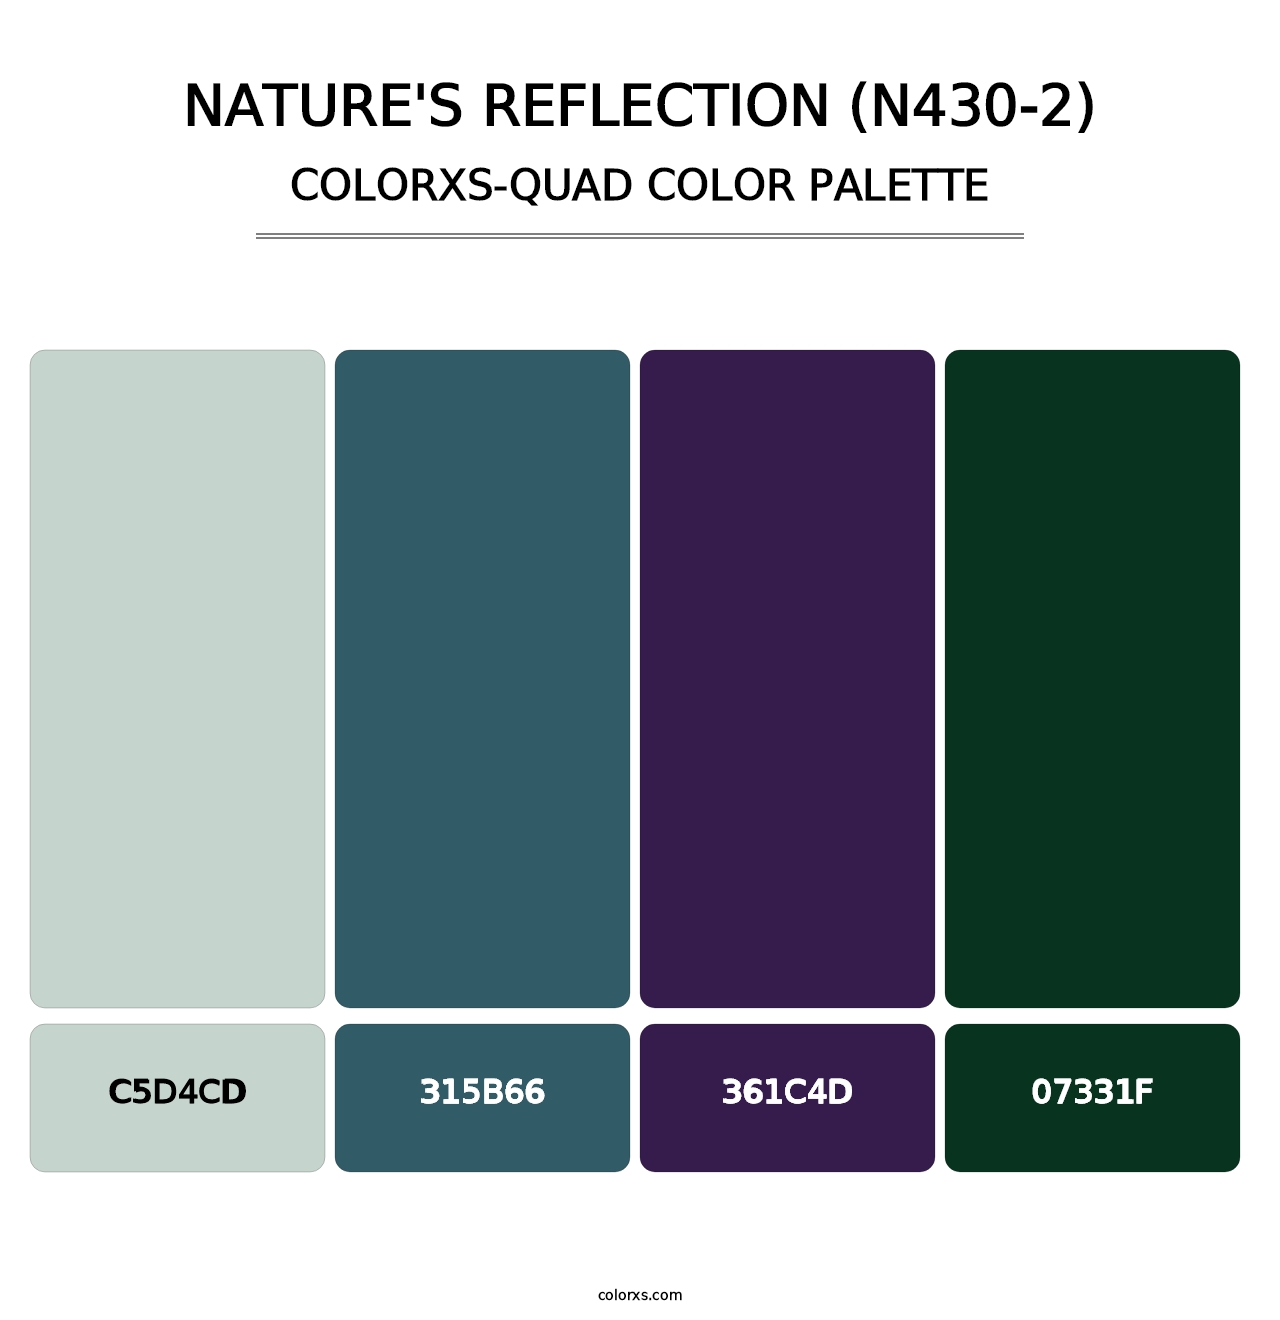 Nature'S Reflection (N430-2) - Colorxs Quad Palette